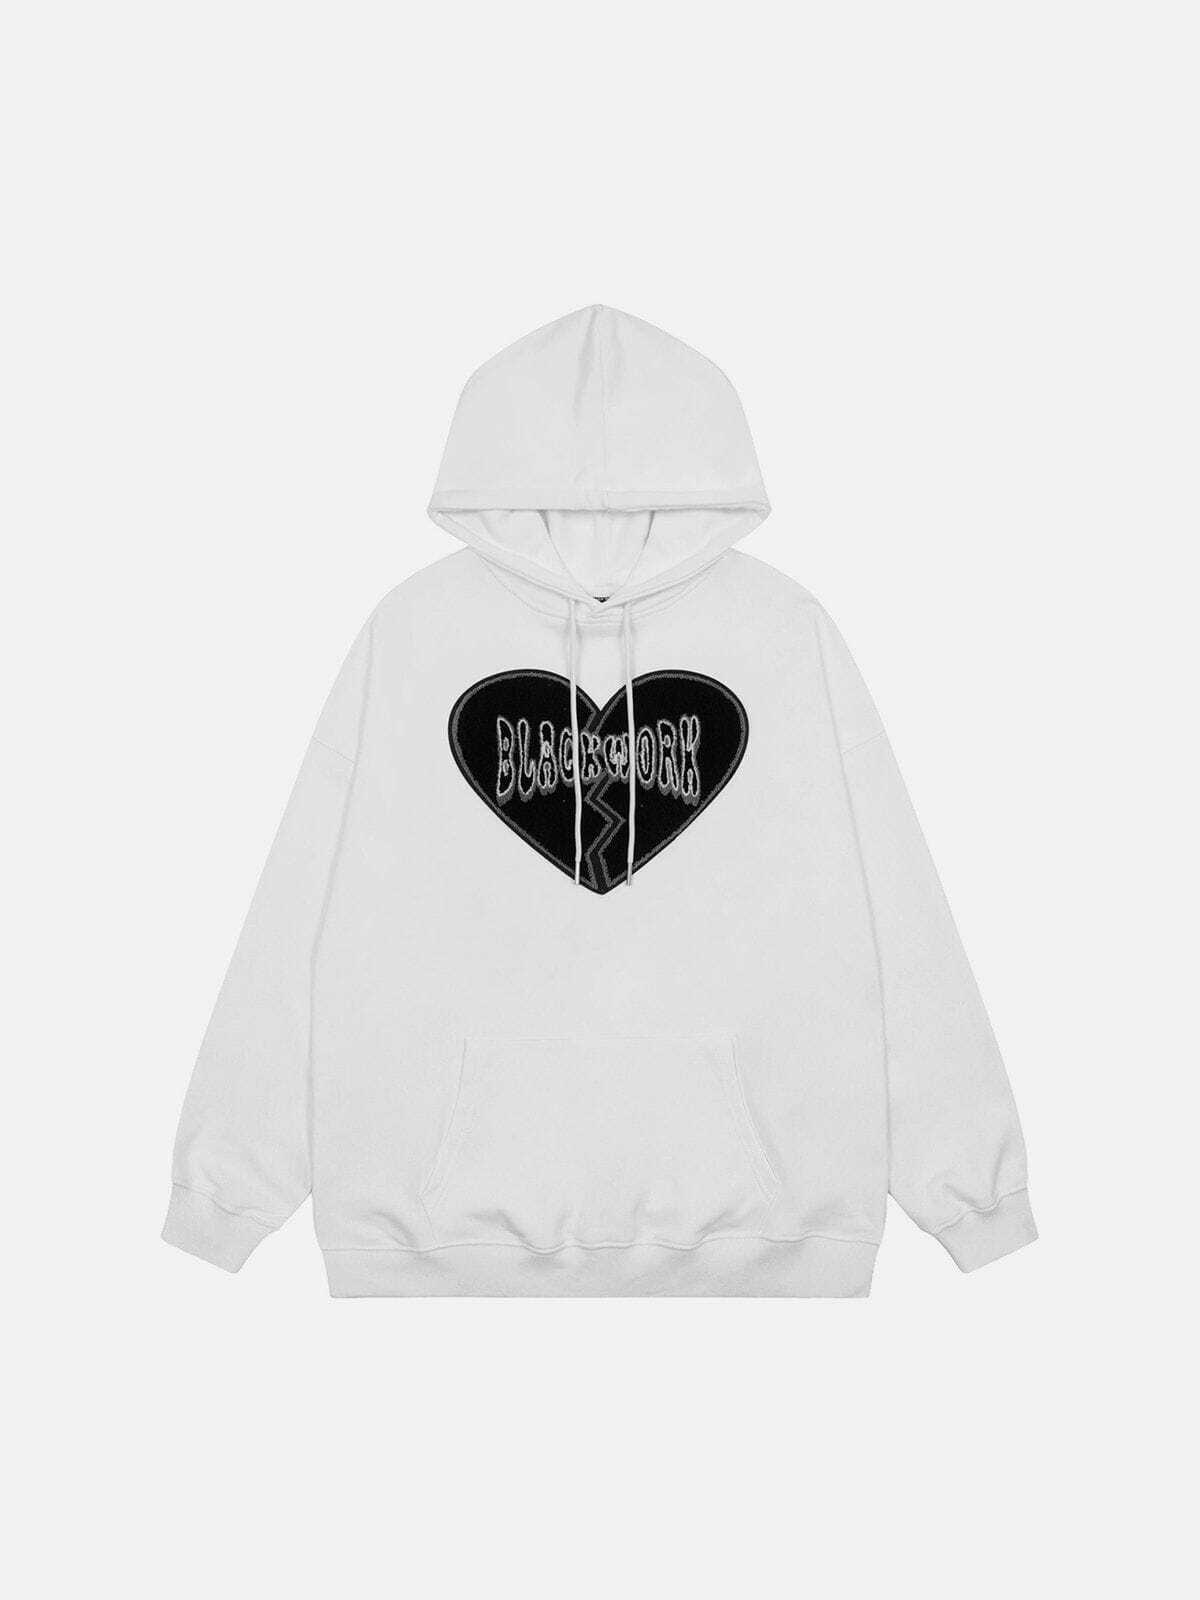 heartbreak hoodie edgy & emotional streetwear 5543